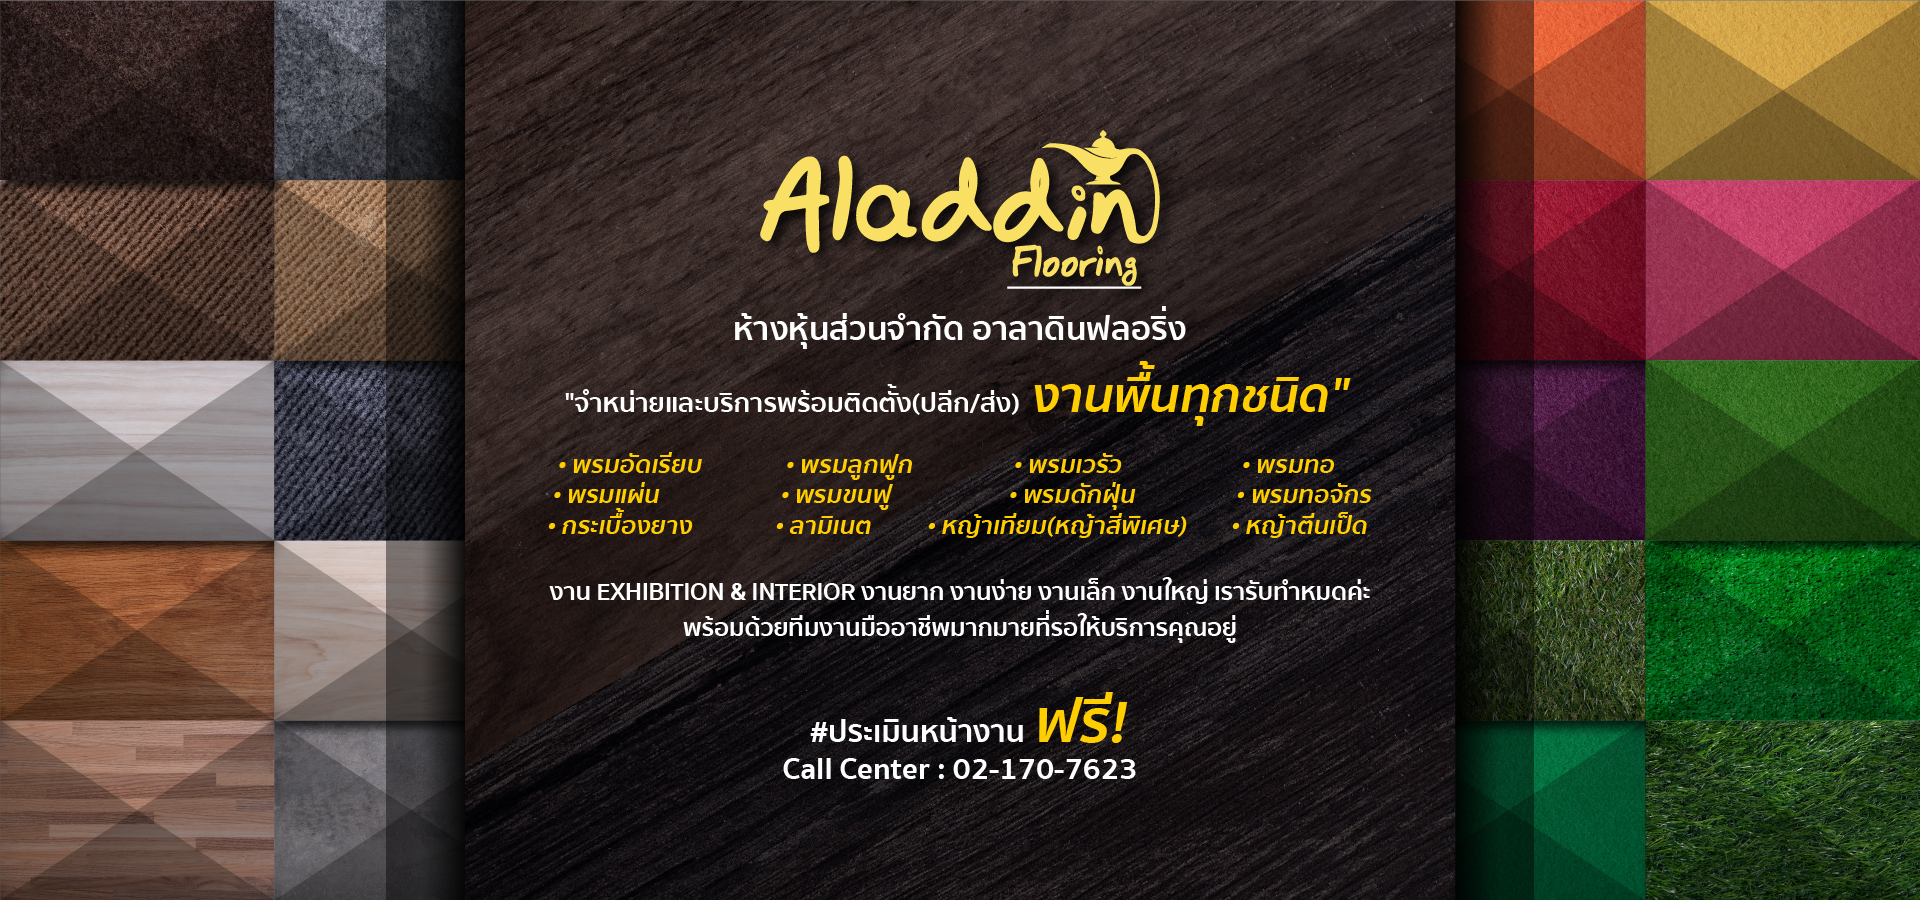 Aladdin-web-banner